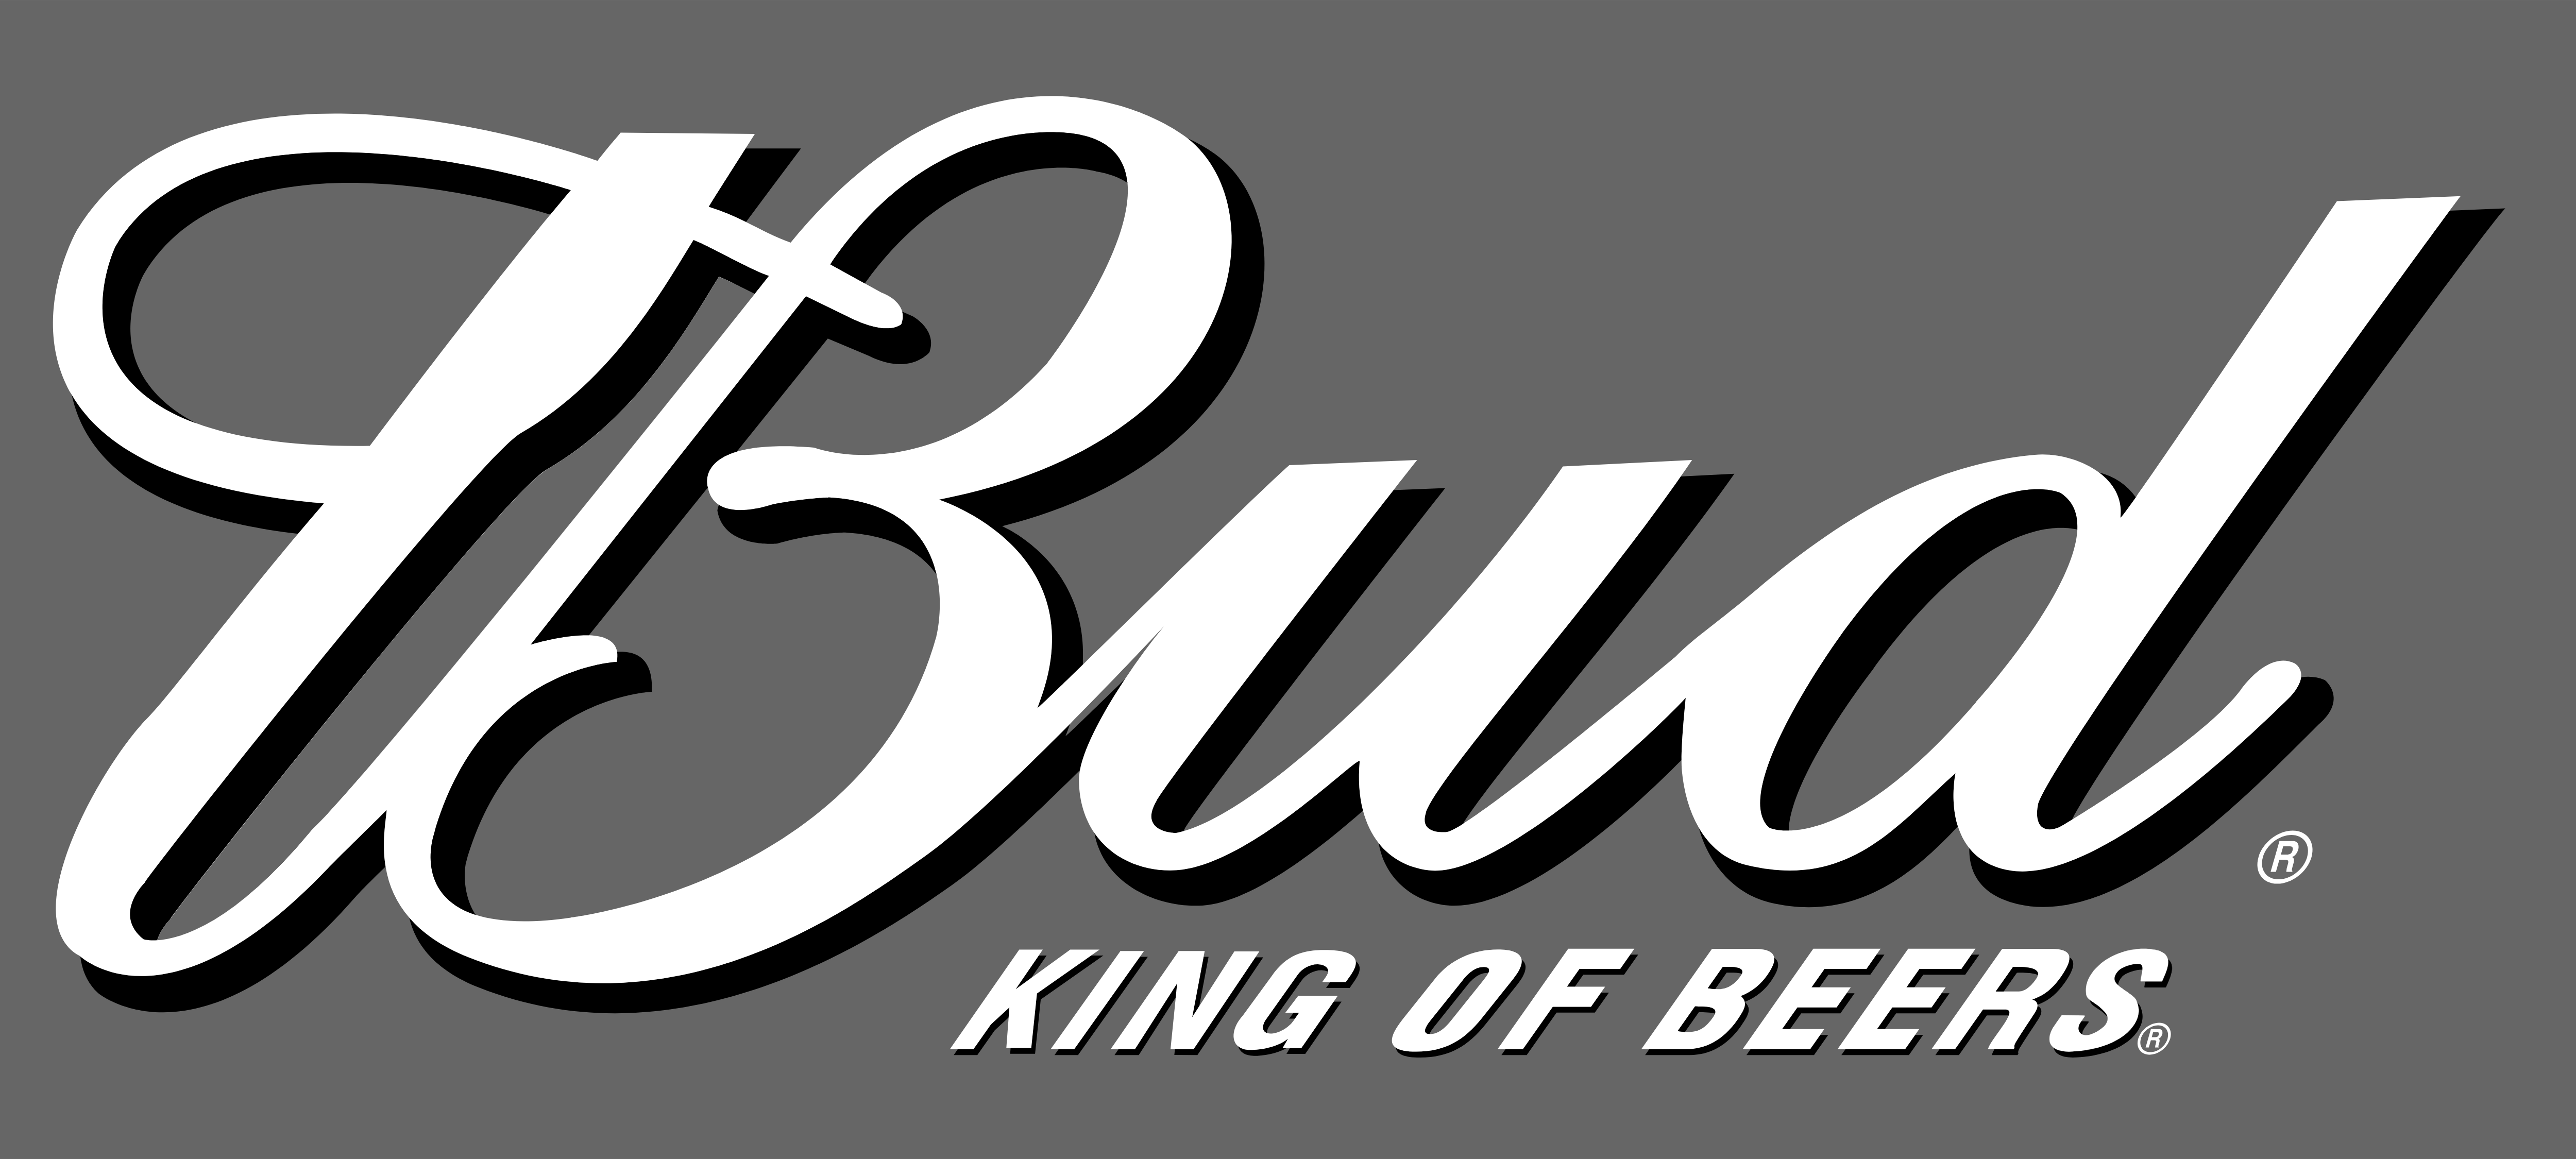 Bud Logo - Bud Kings of Beer – Logos Download